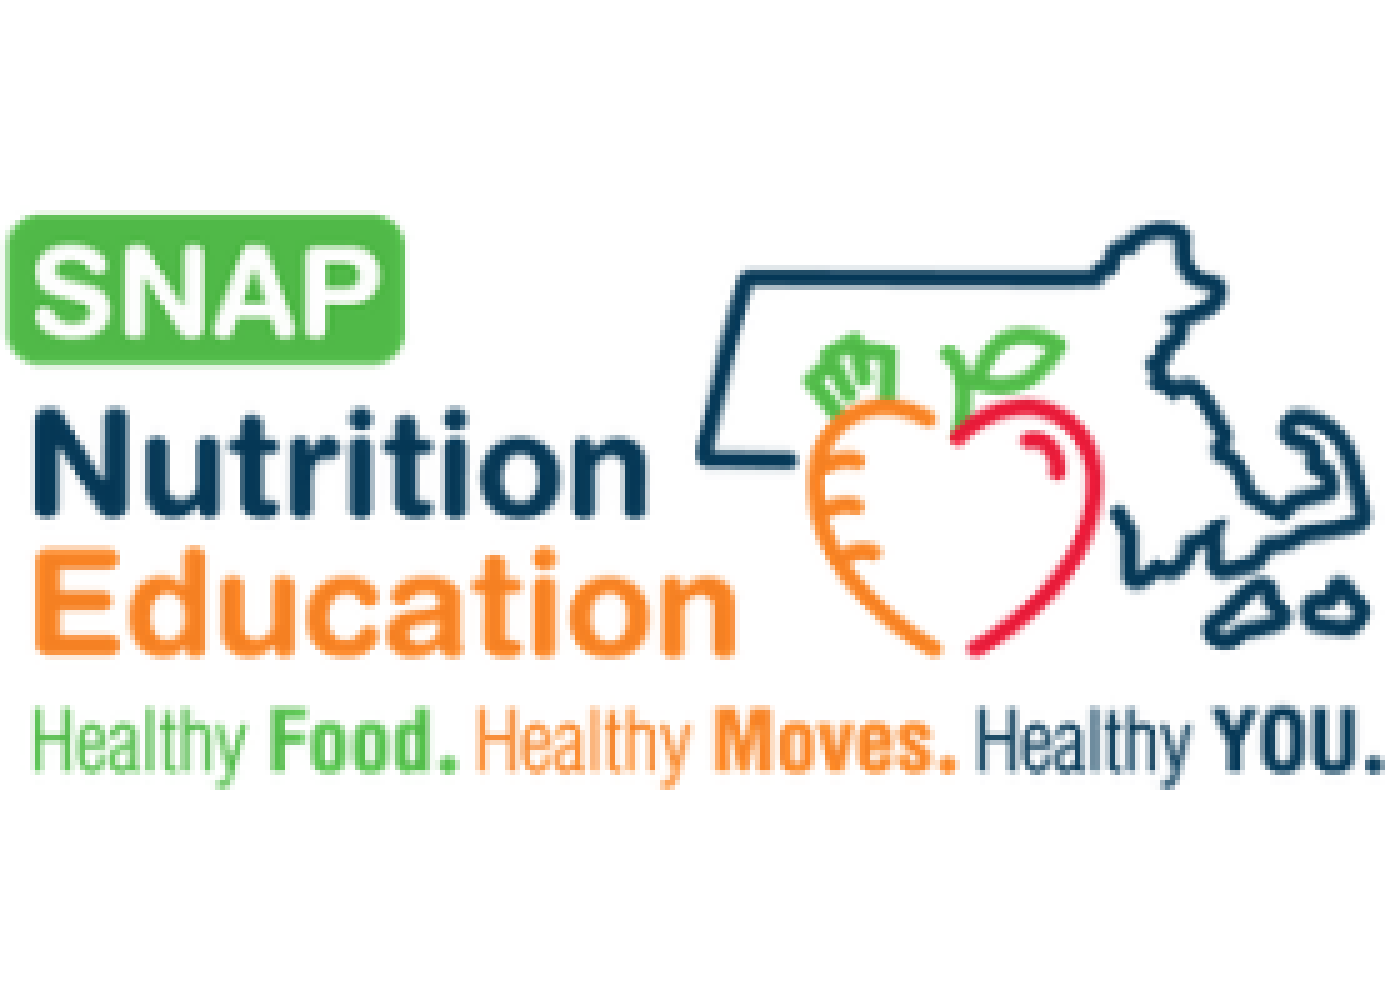 SNAP Nutriton Education Logo. Health Food, Healthy Moves, Healthy You